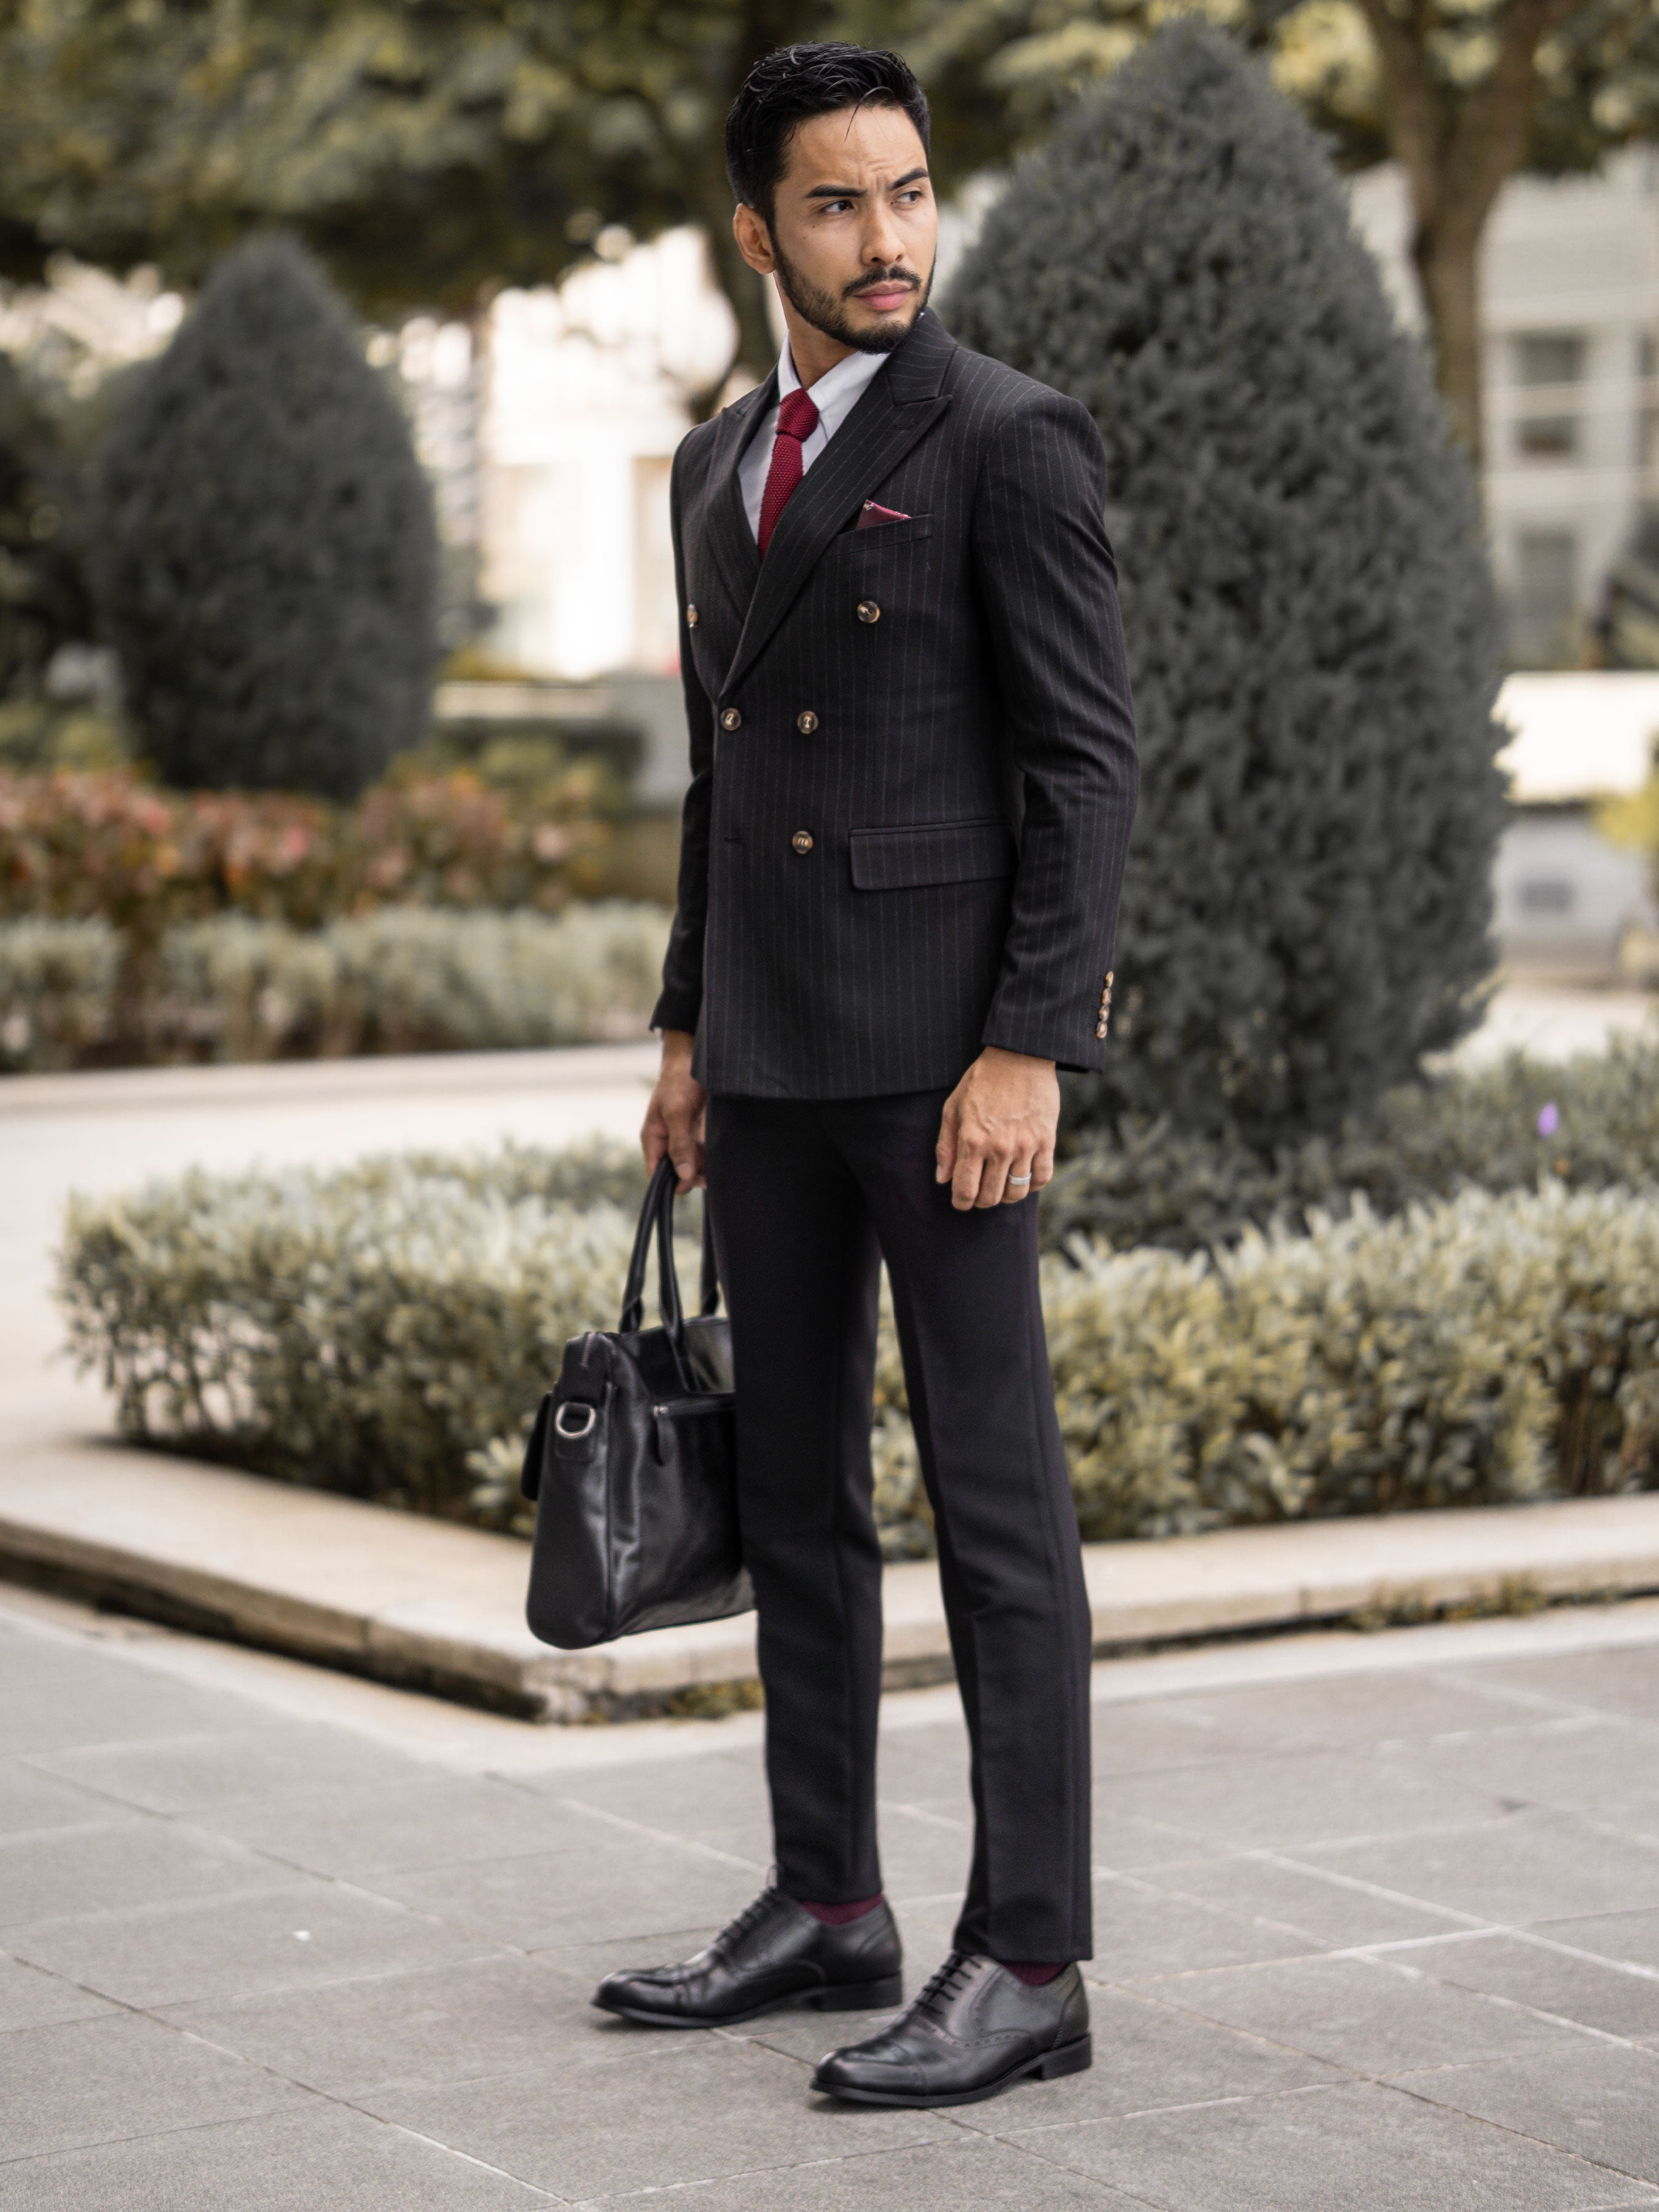 Double Breasted Suit Blazer - Black Pinstripes (Peak Lapel) - Zeve Shoes